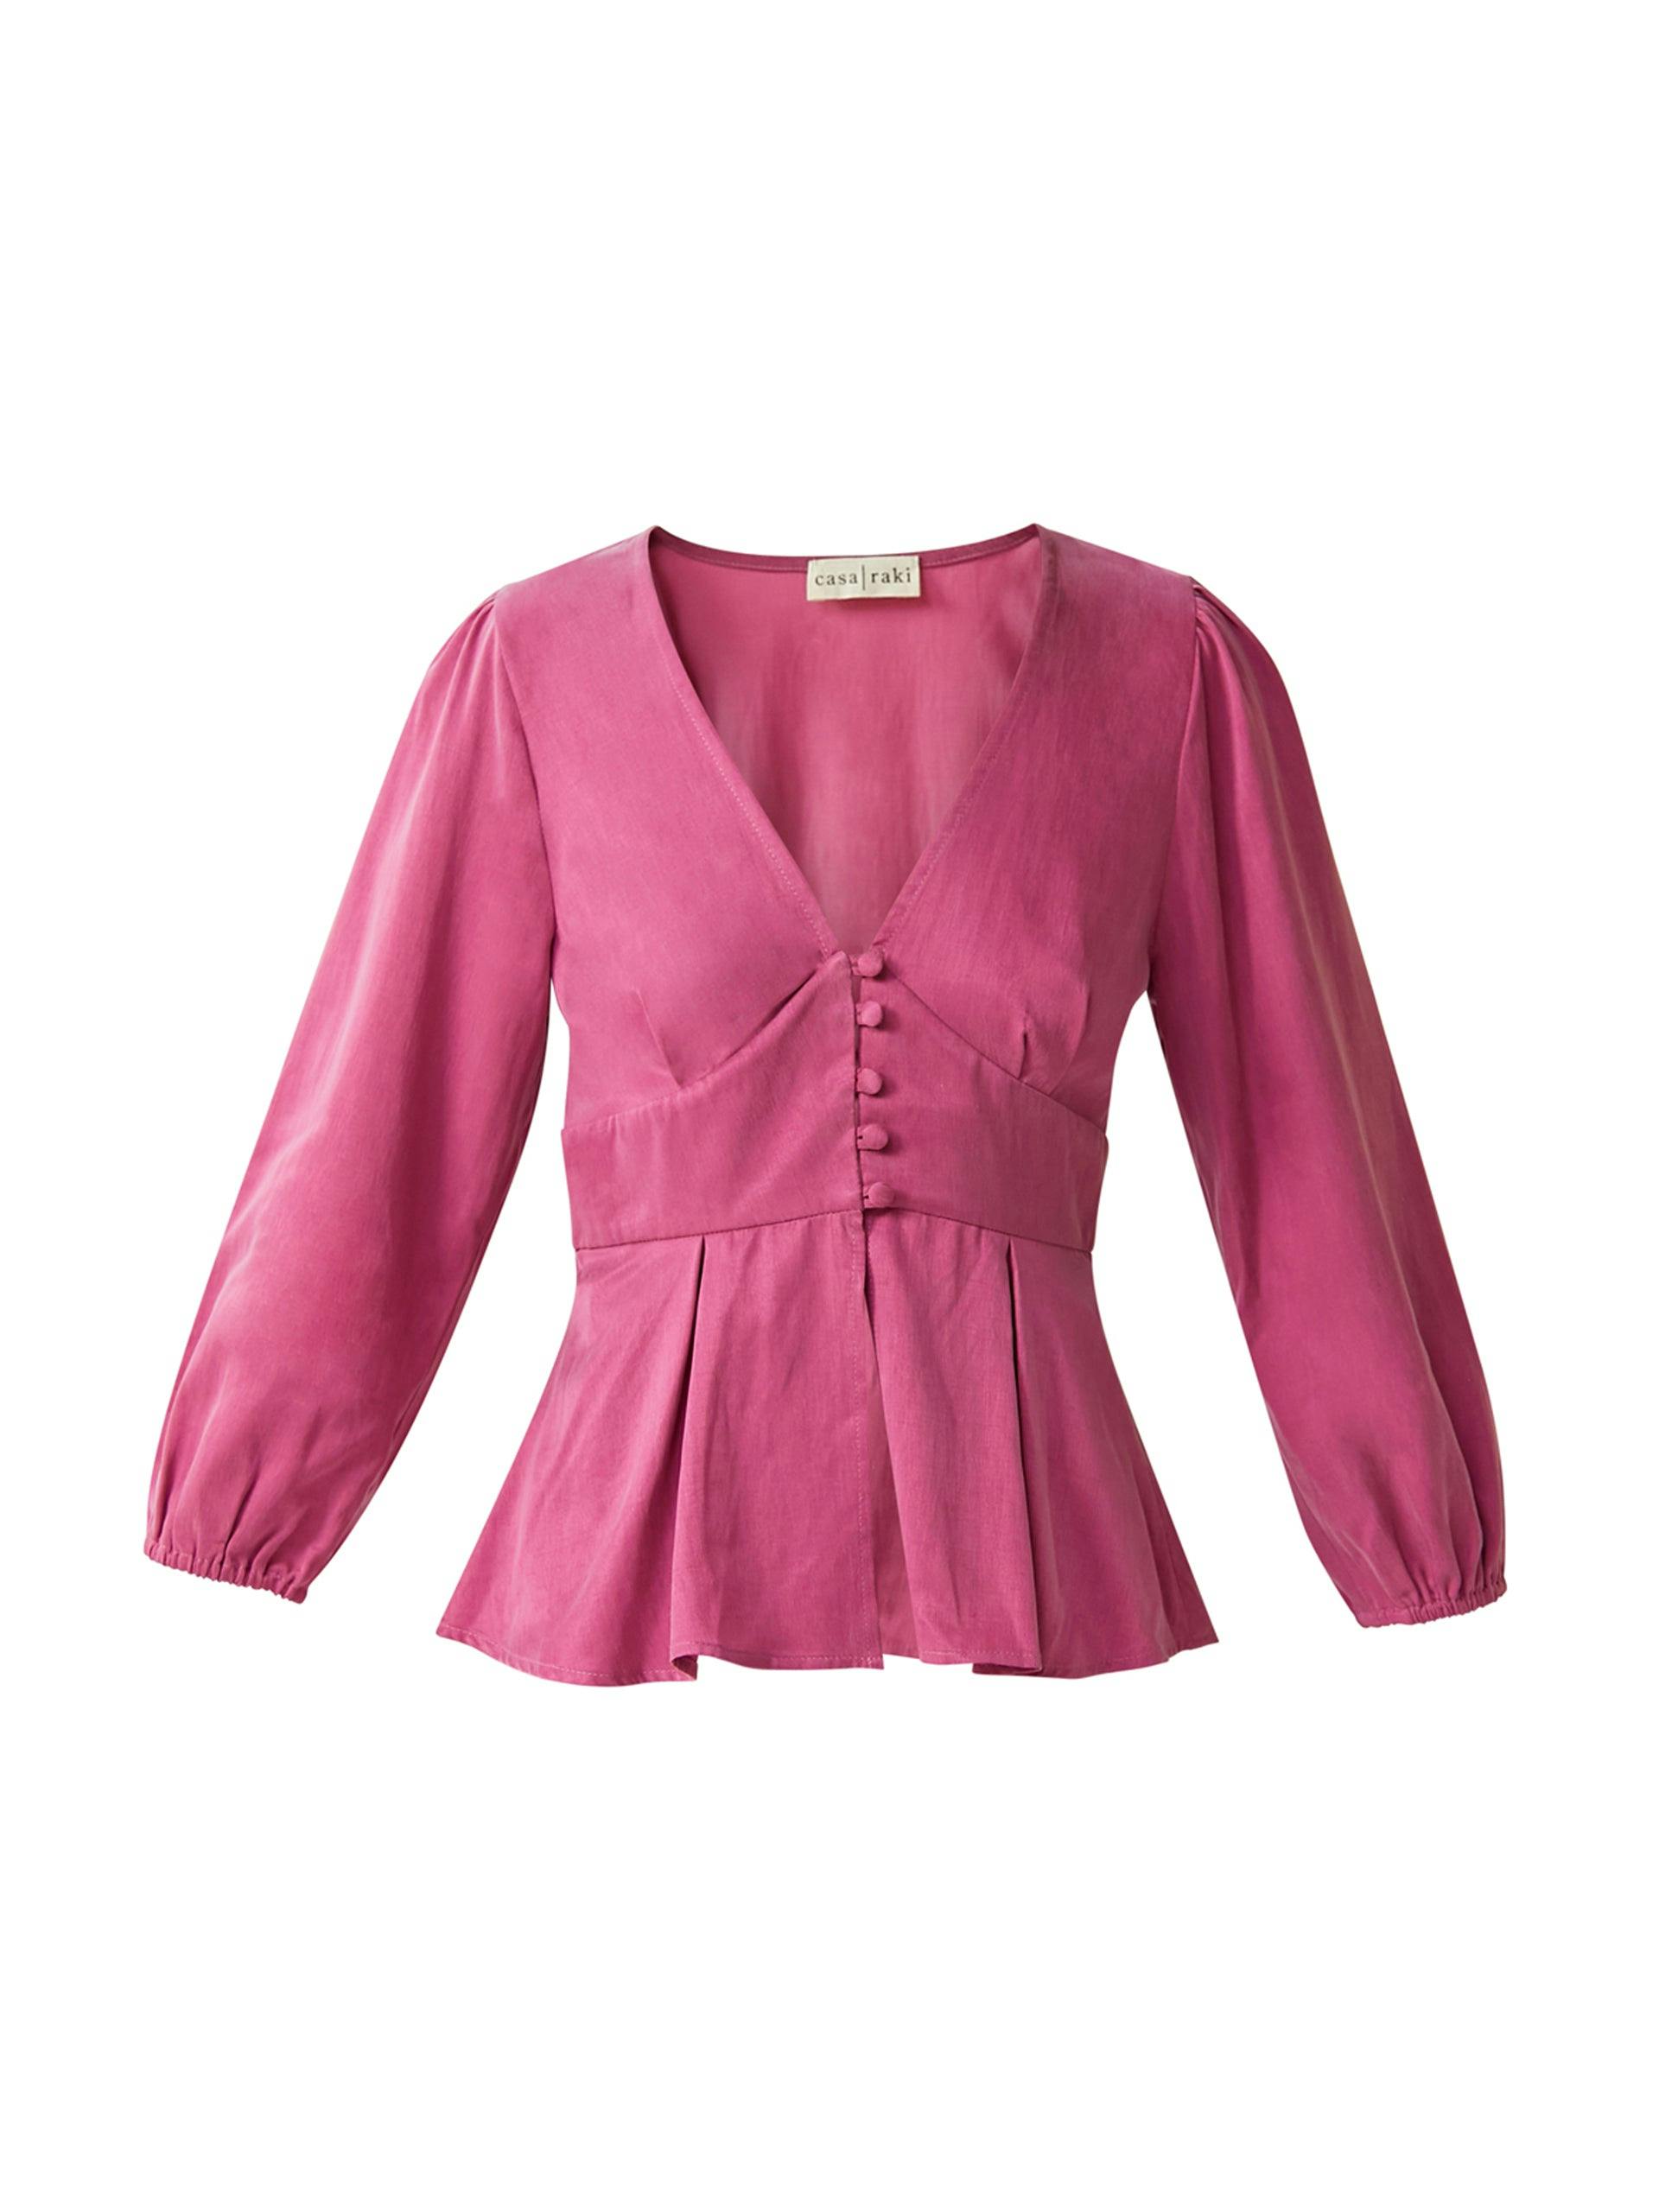 Chiara pink silky blouse